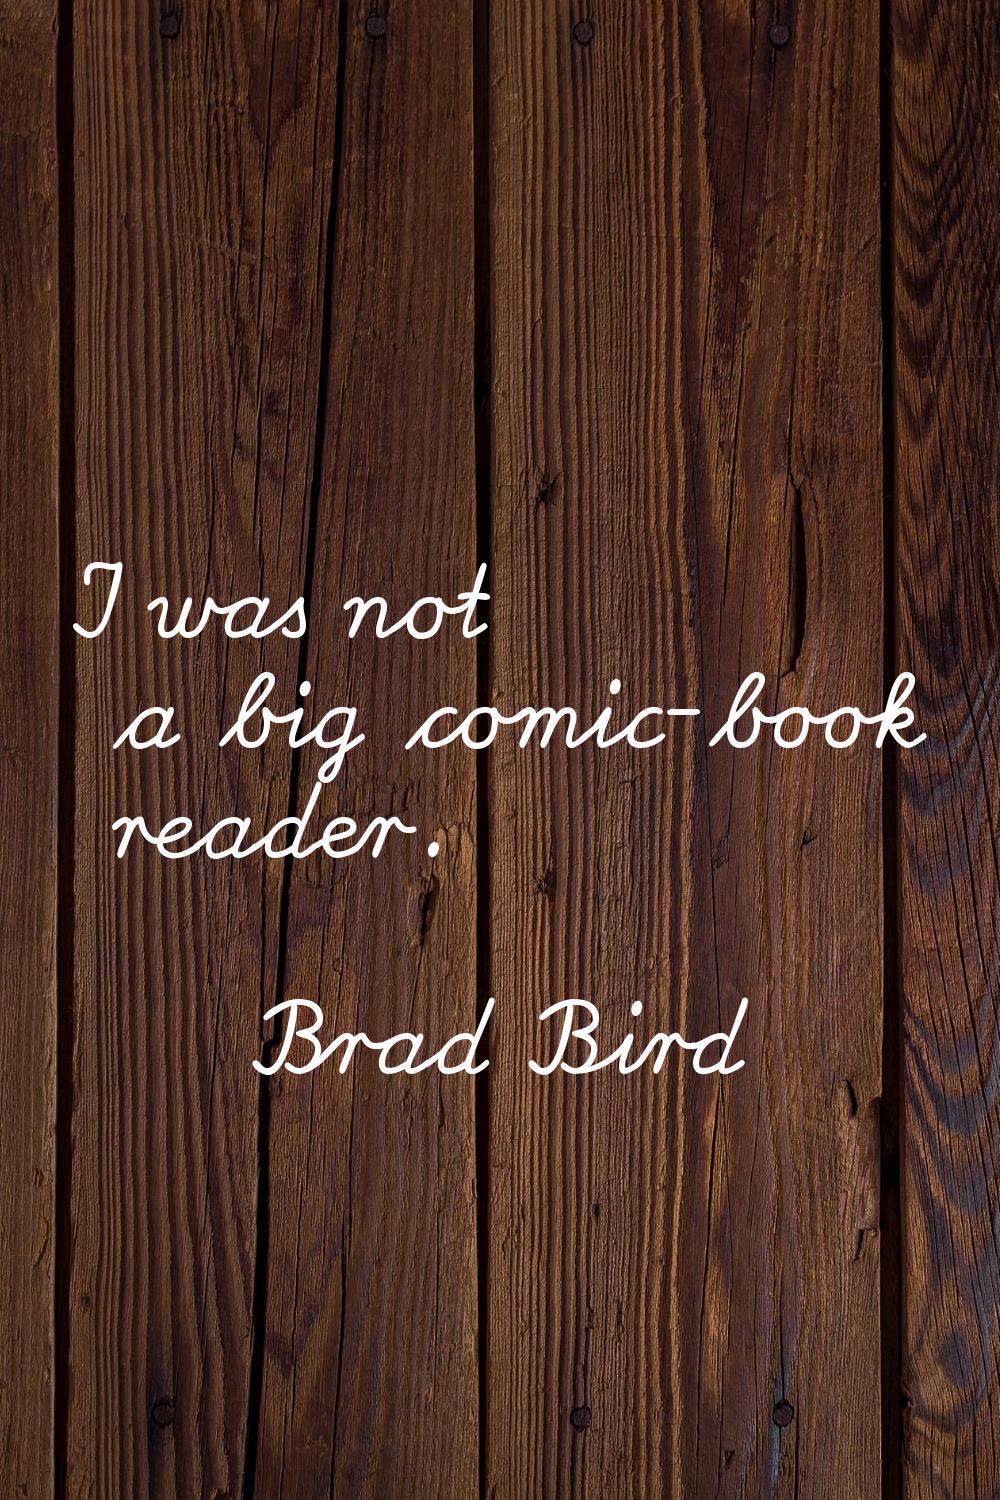 I was not a big comic-book reader.